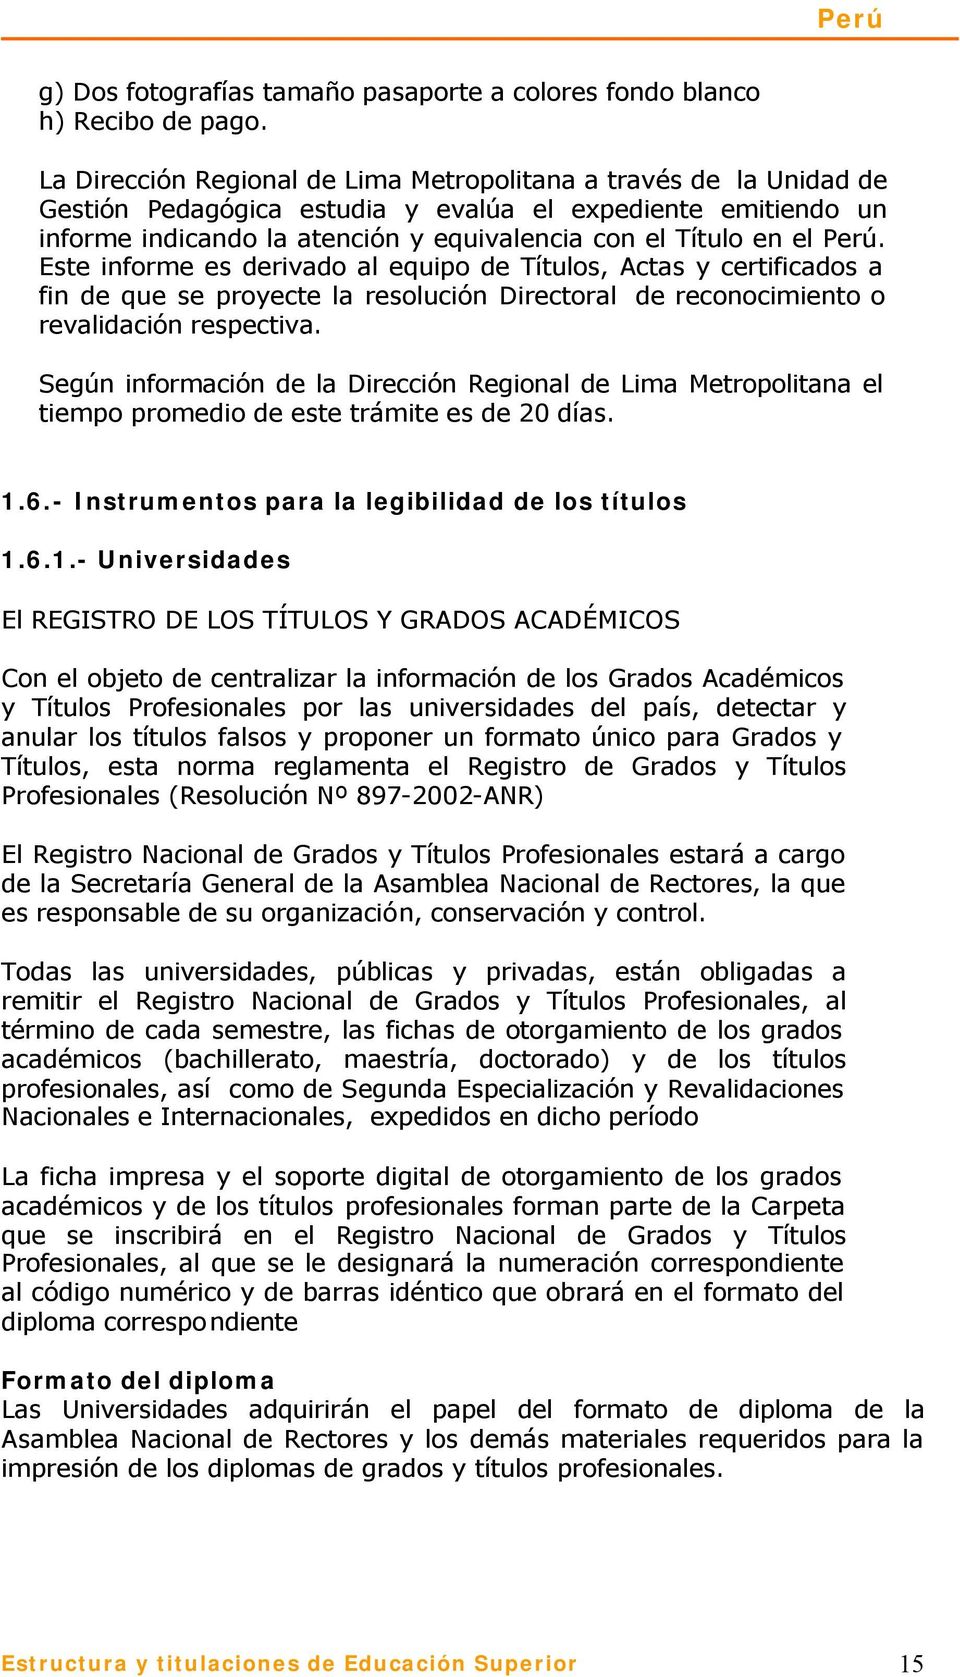 Perú. Este informe es derivado al equipo de Títulos, Actas y certificados a fin de que se proyecte la resolución Directoral de reconocimiento o revalidación respectiva.